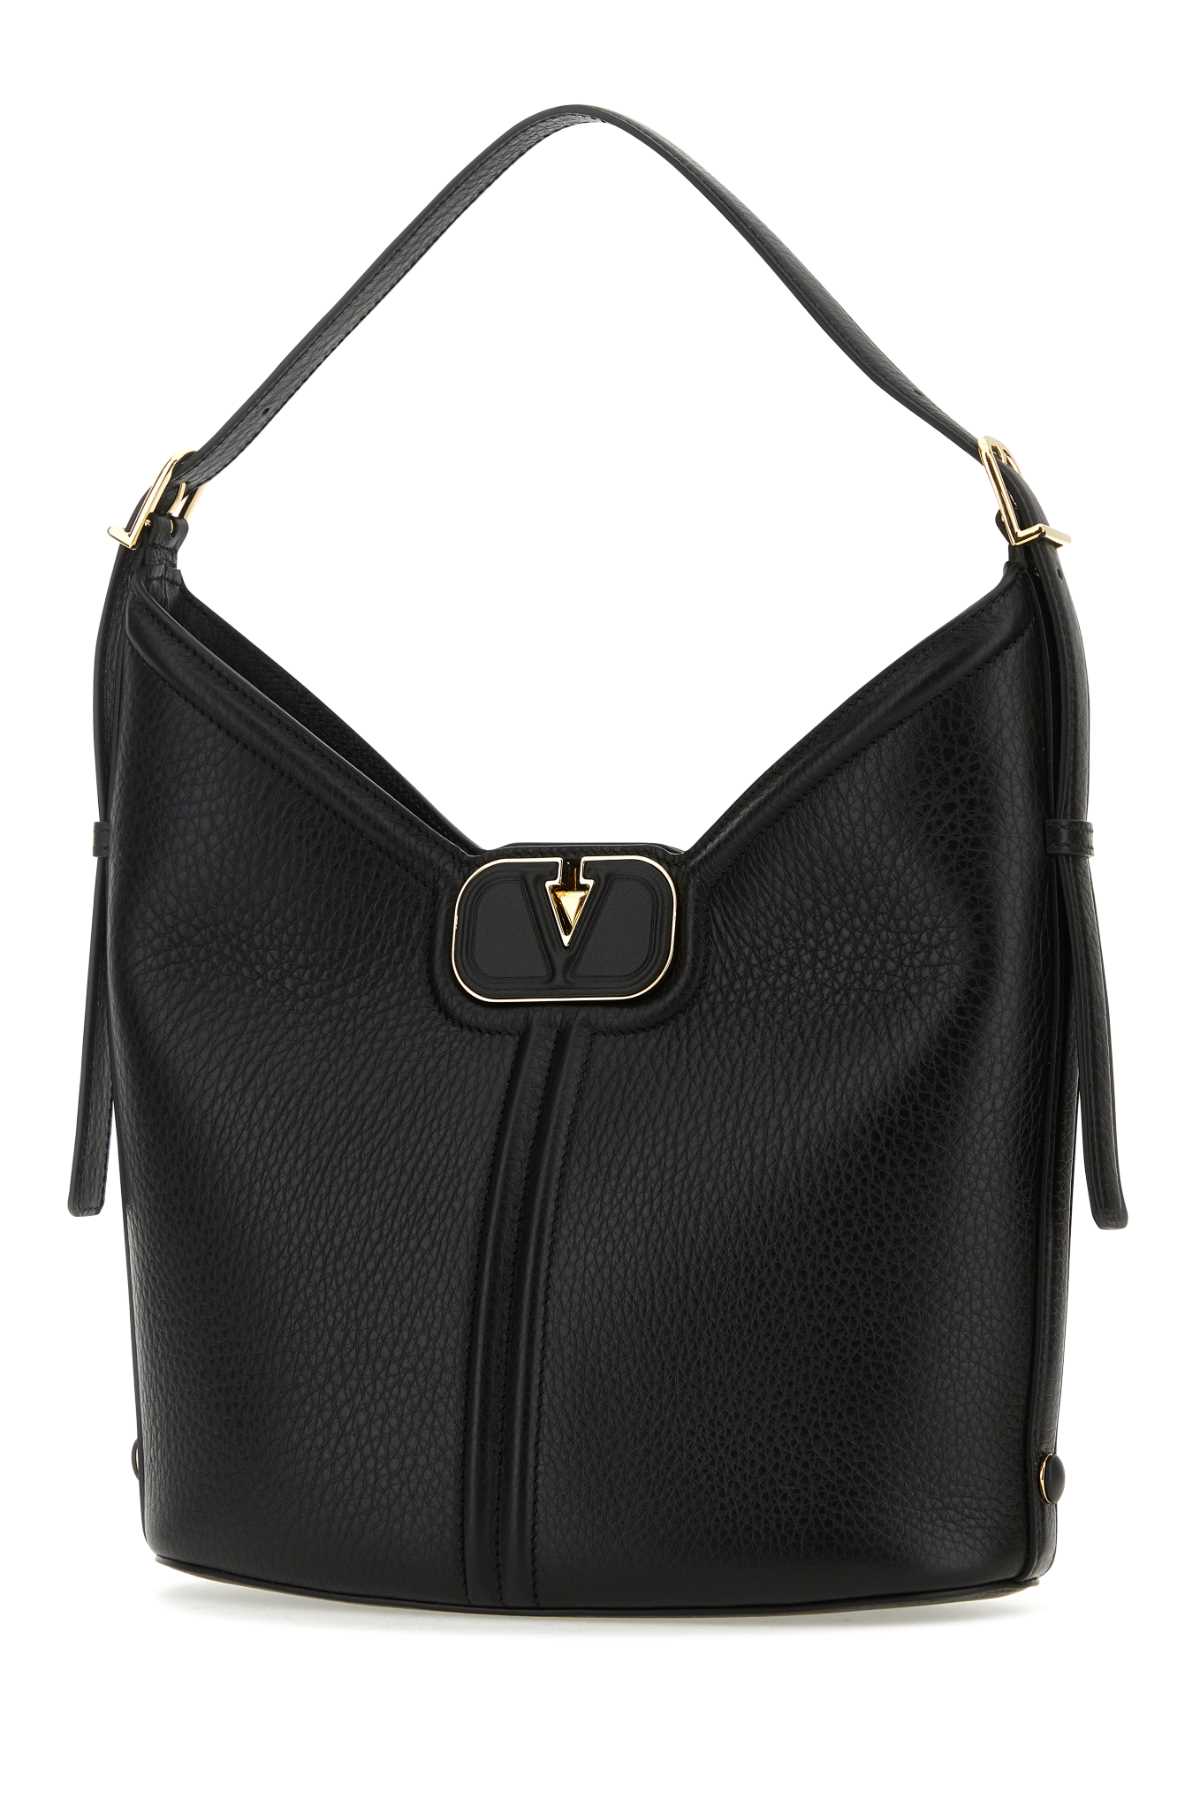 Valentino Garavani Black Leather Vlogo Handbag In Nero